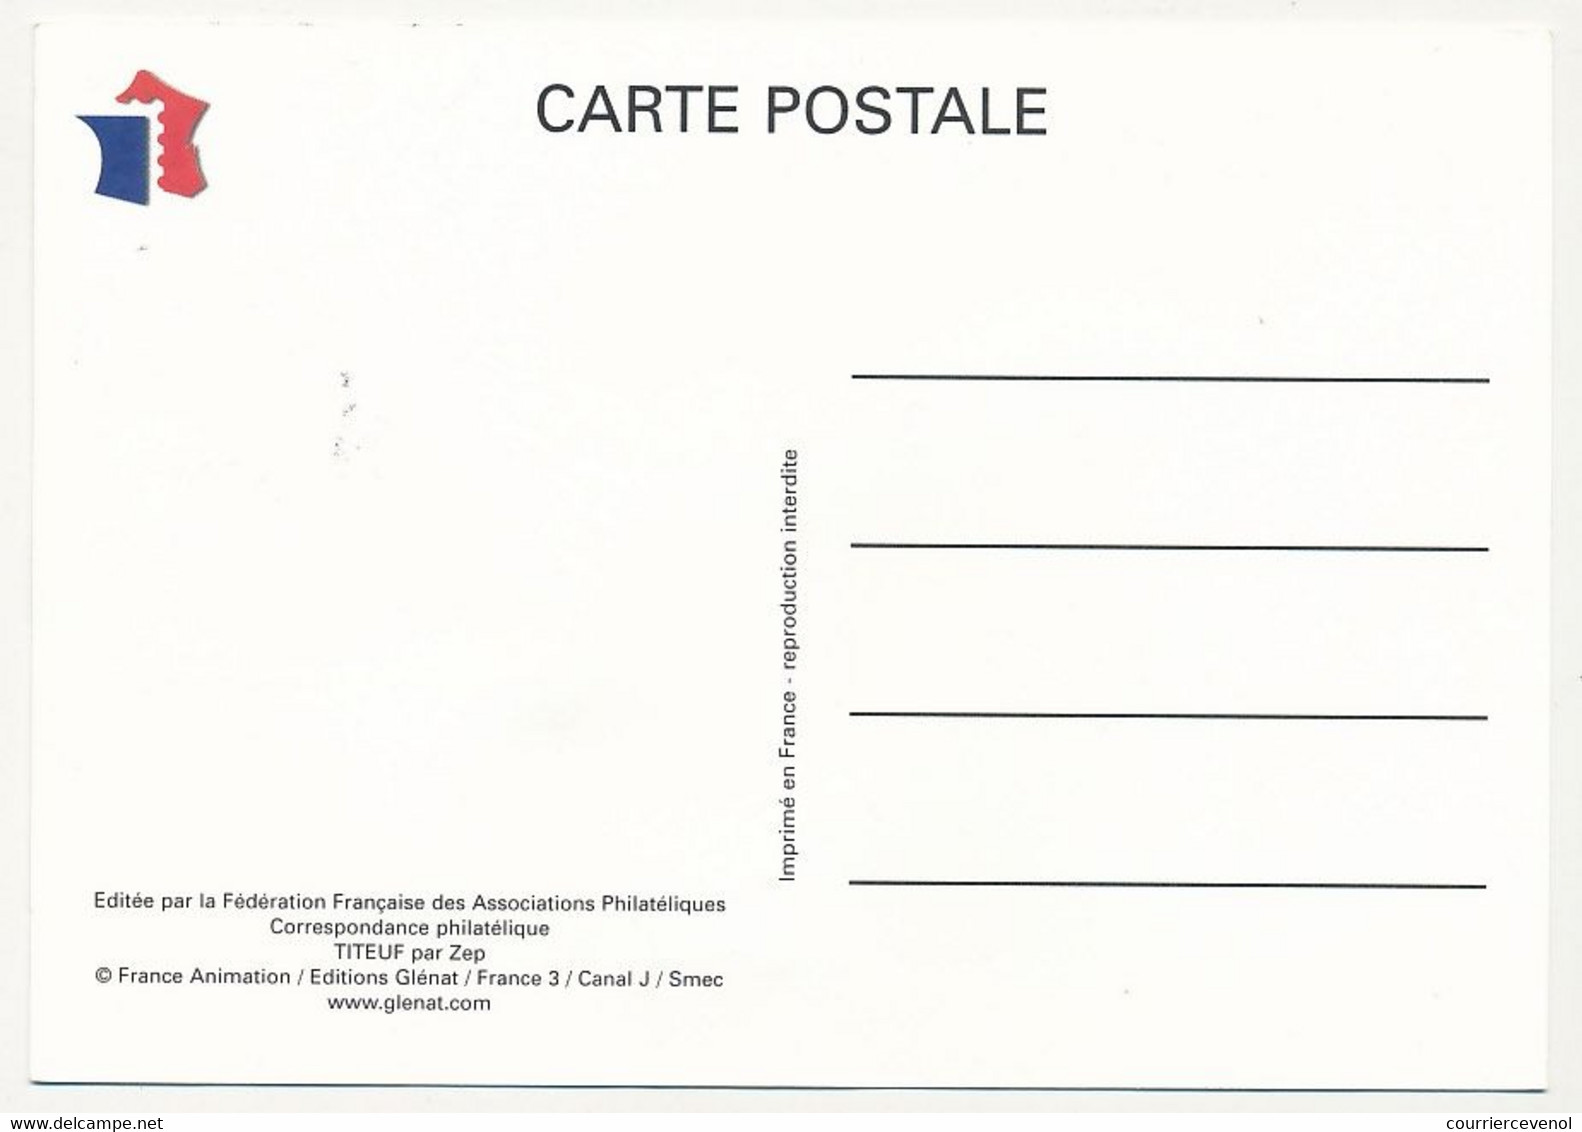 France - Carte Fédérale - Fête Du Timbre 2005 - TITEUF - Oblit. 06 Drap - 26.02.2005 - Briefe U. Dokumente